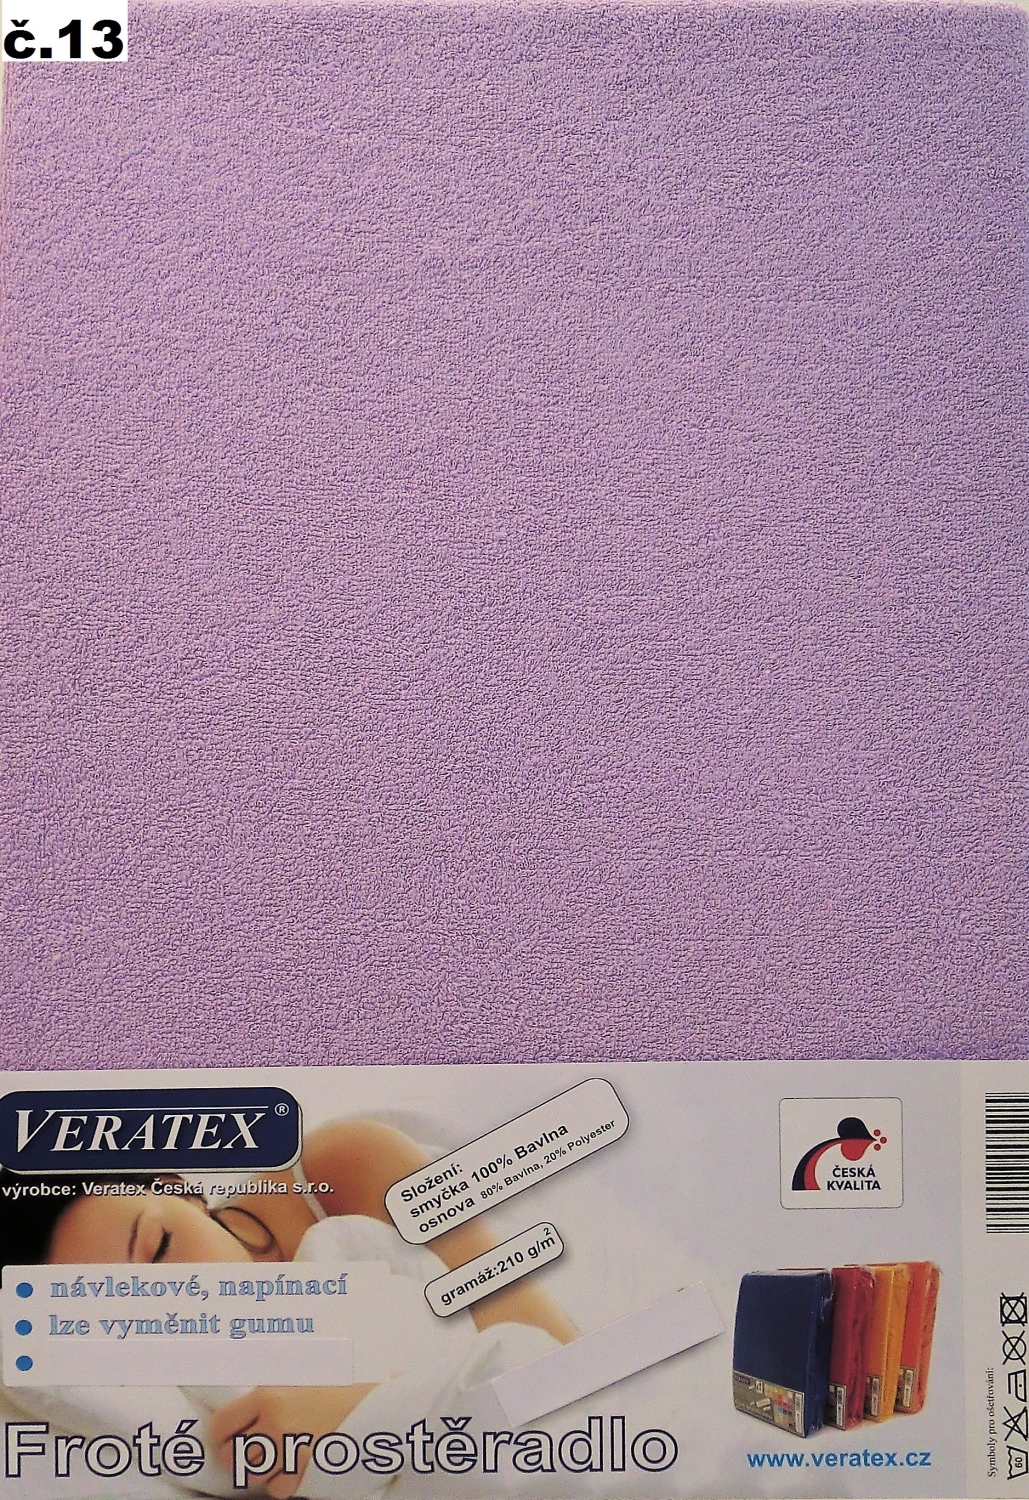 Veratex Froté prostěradlo 80x220/16 cm (č.13-fialková) 80 x 220 cm